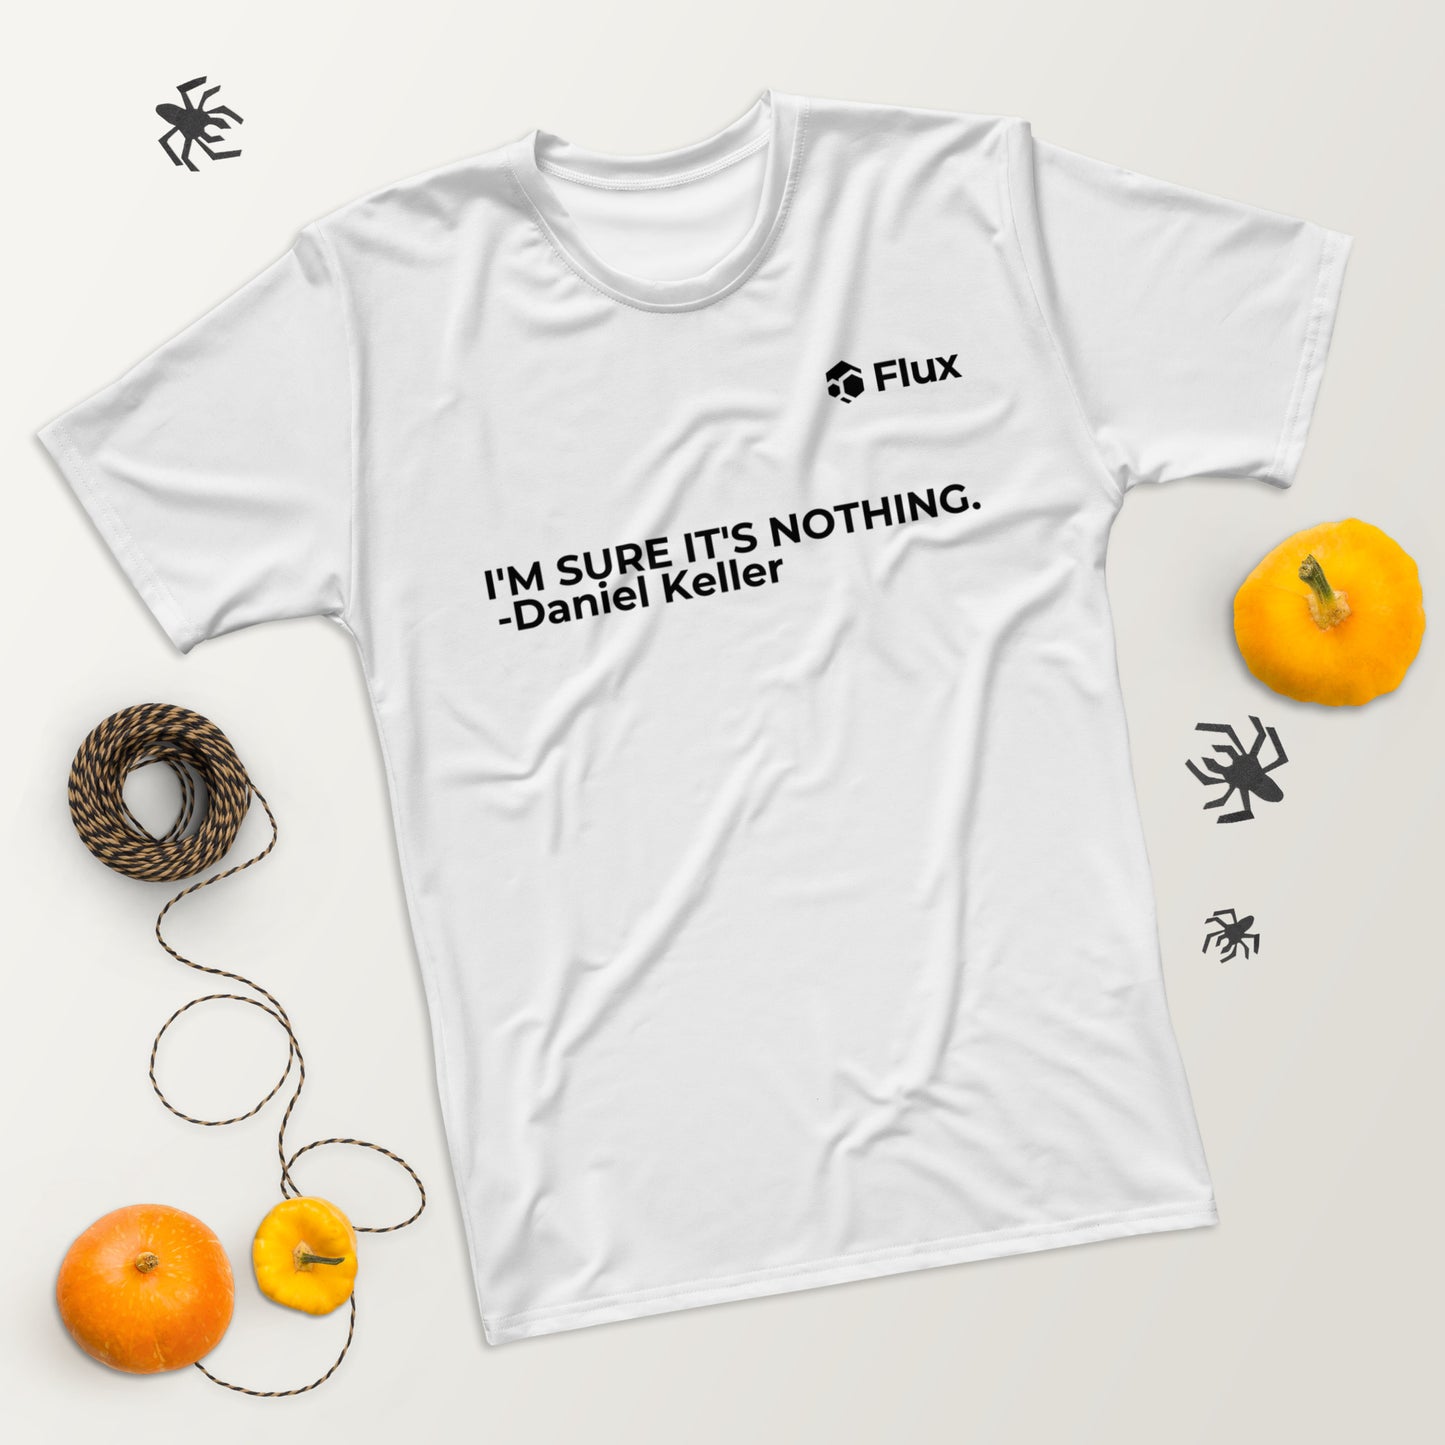 FLUX Men's T-Shirt